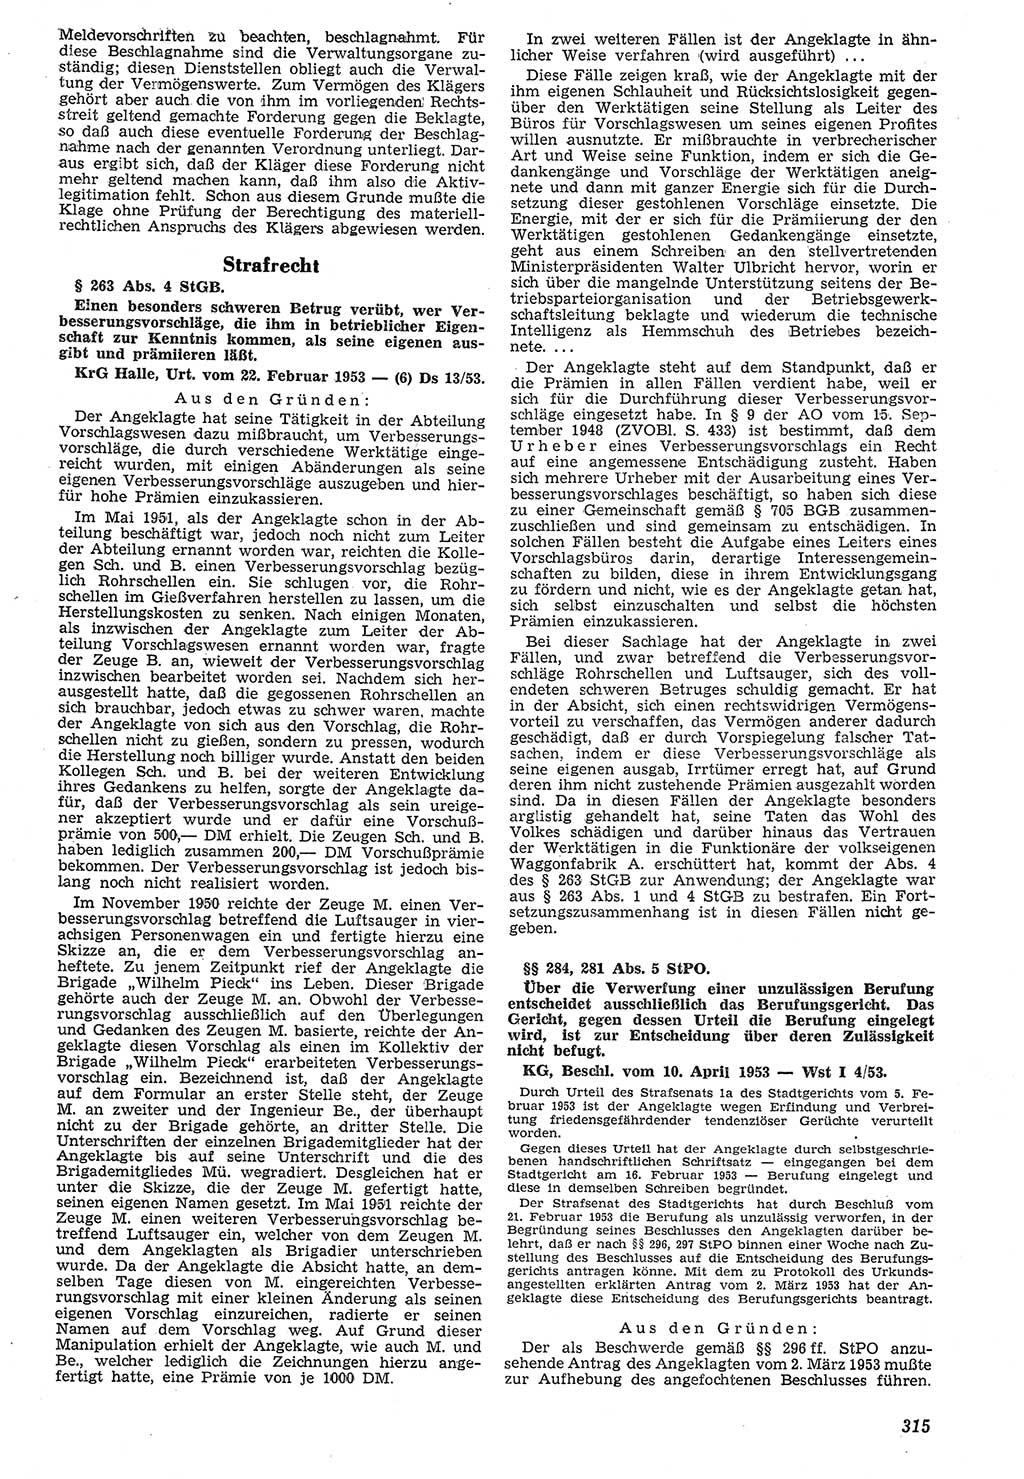 Neue Justiz (NJ), Zeitschrift für Recht und Rechtswissenschaft [Deutsche Demokratische Republik (DDR)], 7. Jahrgang 1953, Seite 315 (NJ DDR 1953, S. 315)